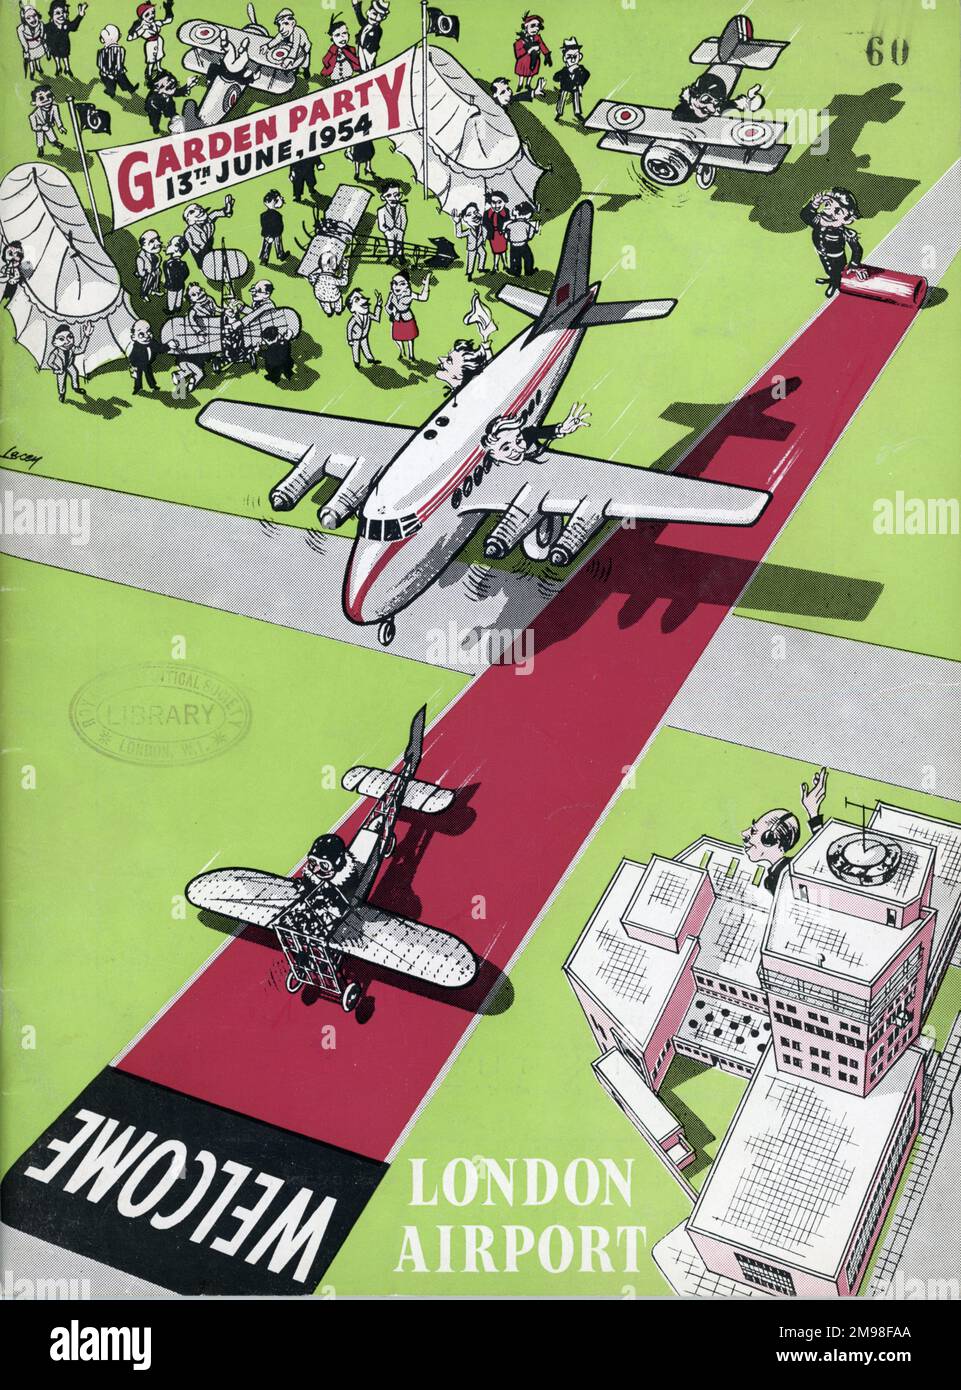 Titelseite des Gartenparty-Programms der Royal Aeronautical Society 1954. Stockfoto